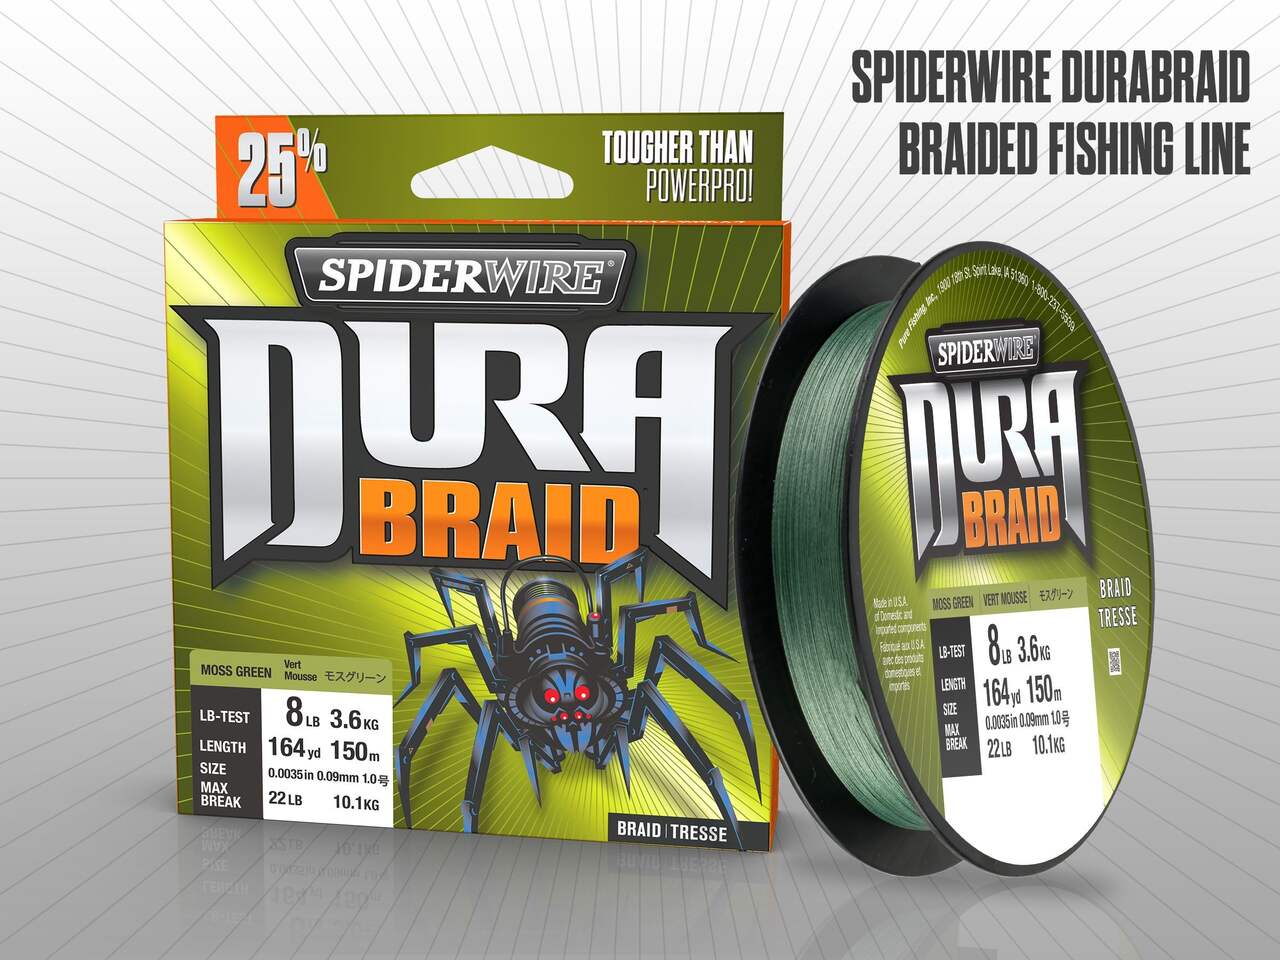 Spiderwire Dura 4 Braid Fishing Line, 115 Mt / 125 Yd